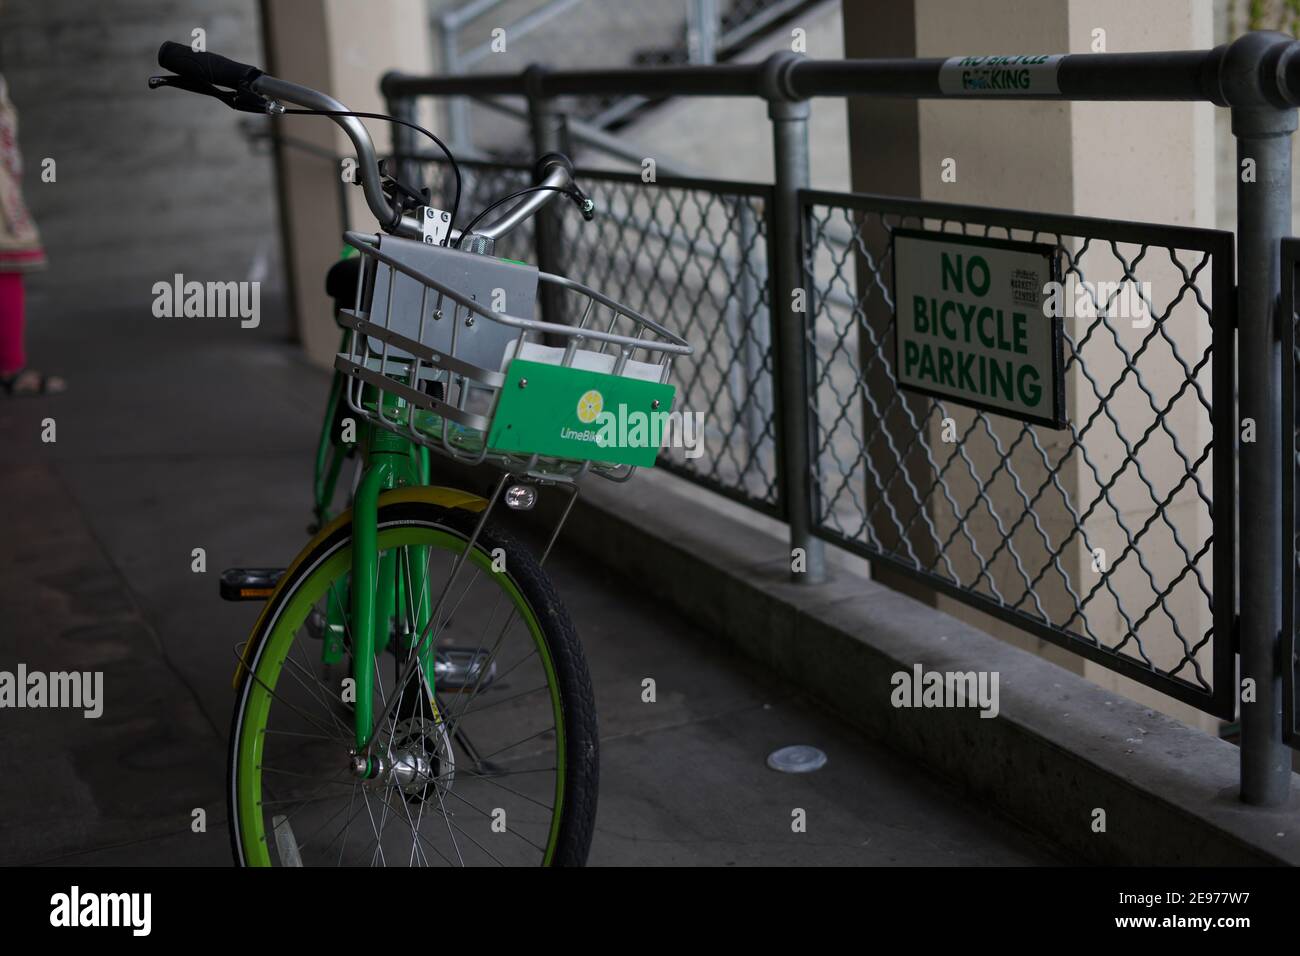 Seattle, WA-11.28.18: Un noleggio Lime Green Bike parcheggio ironicamente accanto a un cartello con la scritta 'No Bicycle Parking'. Foto Stock